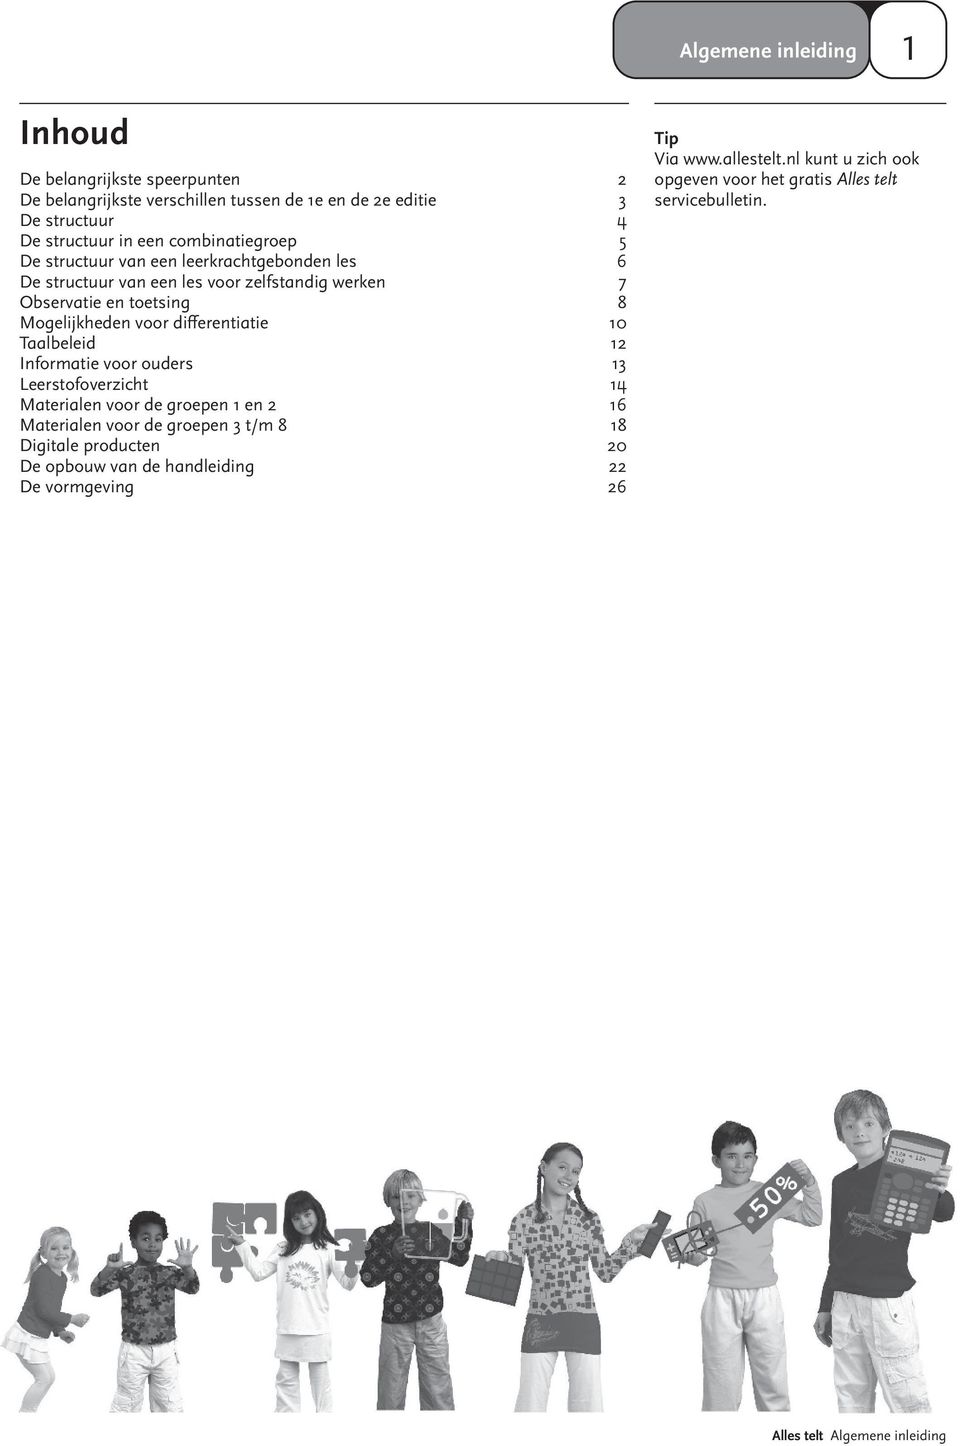 differentiatie 10 Taalbeleid 12 Informatie voor ouders 13 Leerstofoverzicht 14 Materialen voor de groepen 1 en 2 16 Materialen voor de groepen 3 t/m 8 18 Digitale